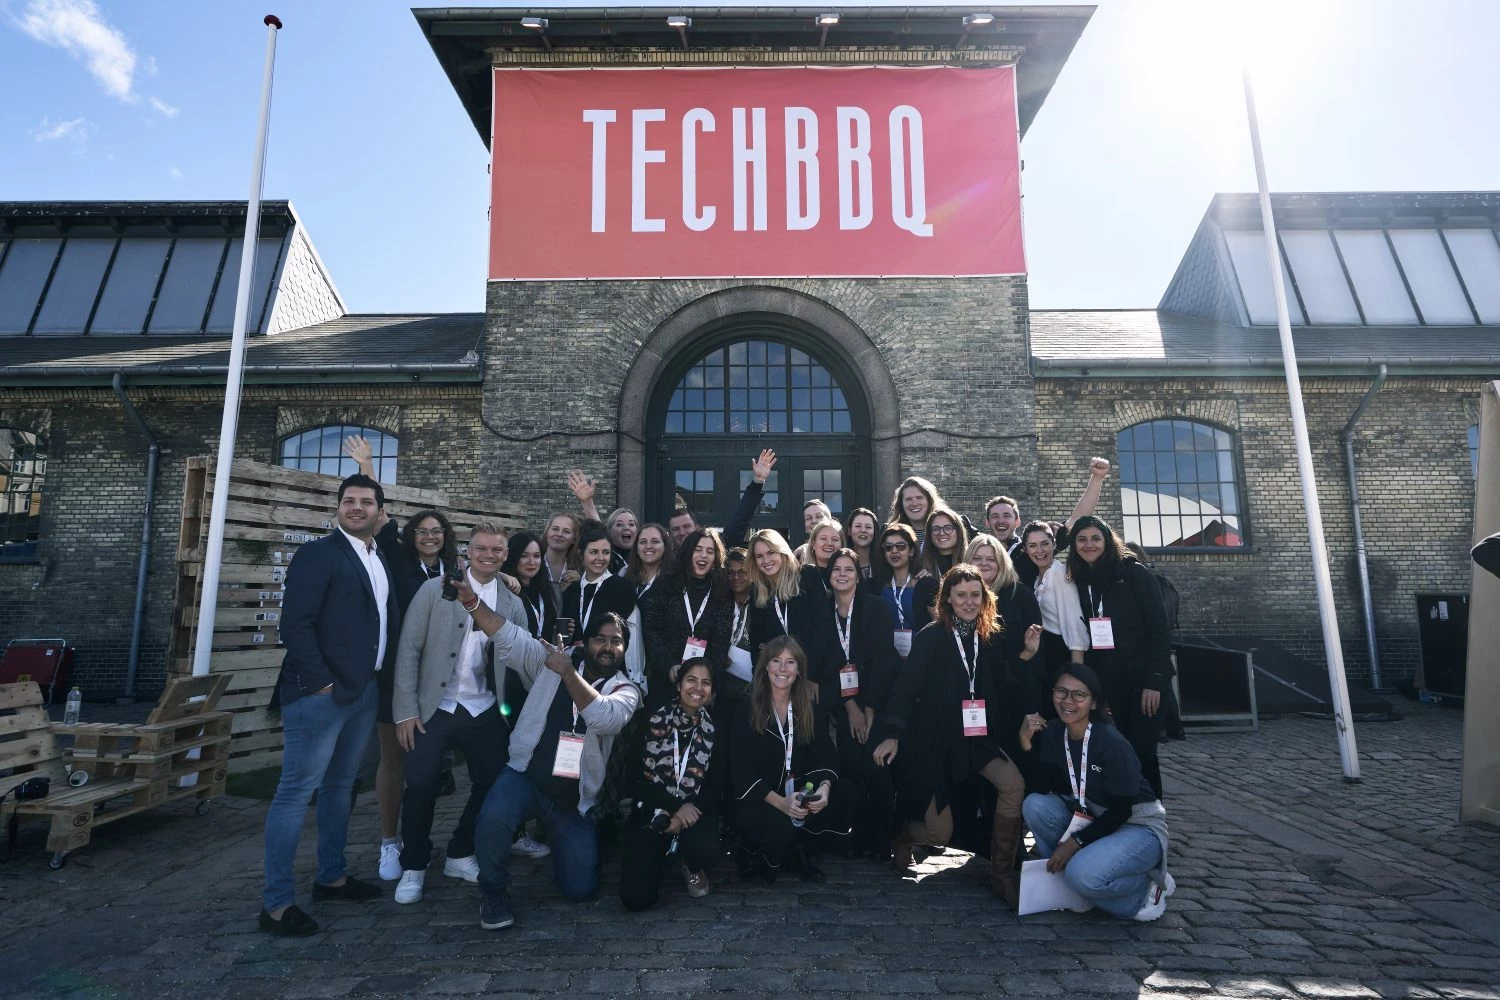 TechBBQ 2018 team photo